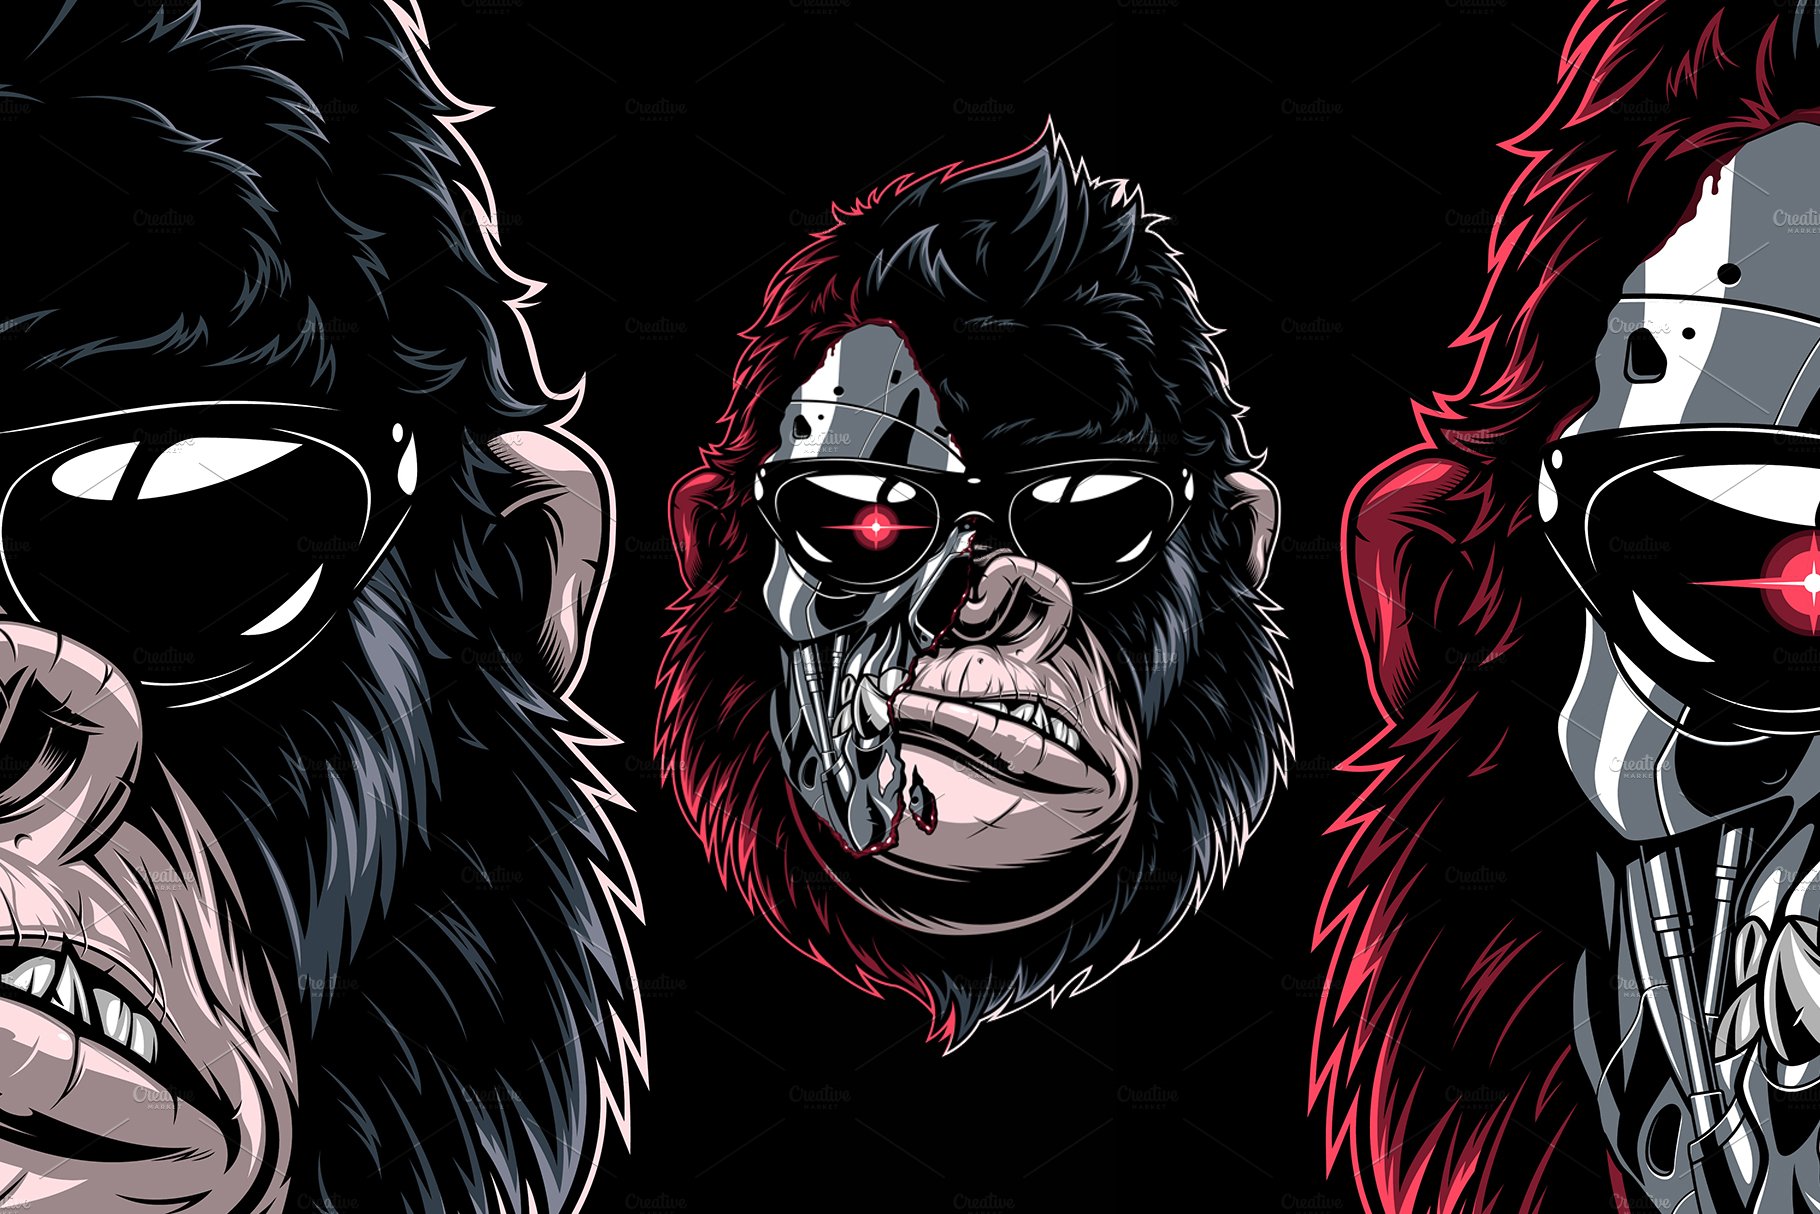 Gorilla cyborg cover image.